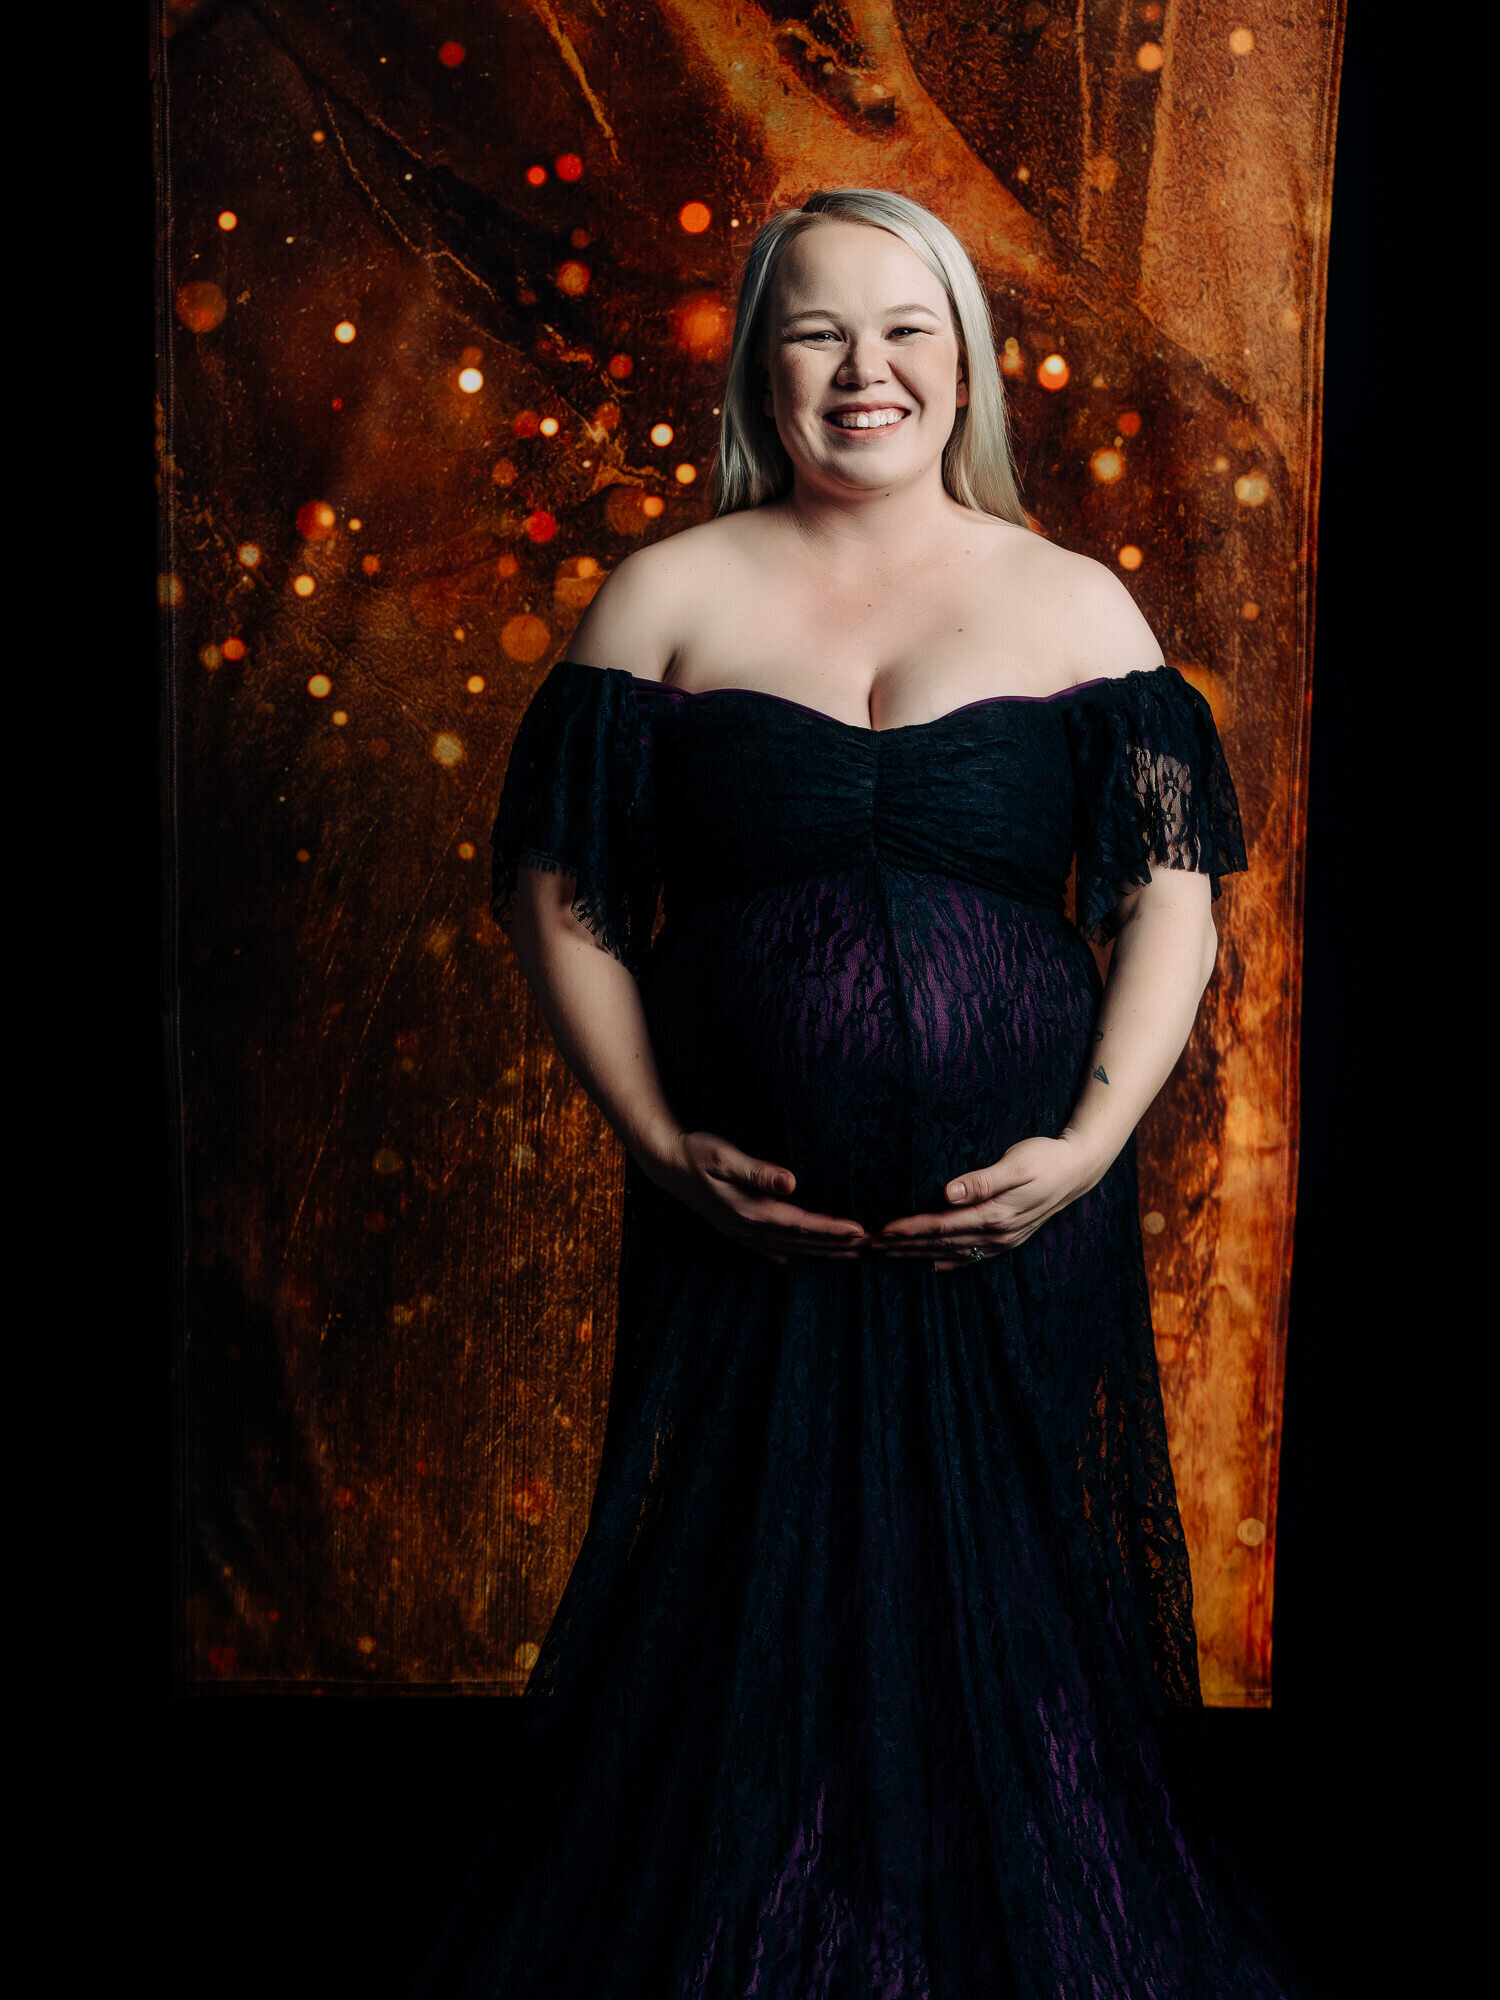 Black lace dress in Prescott AZ maternity photos